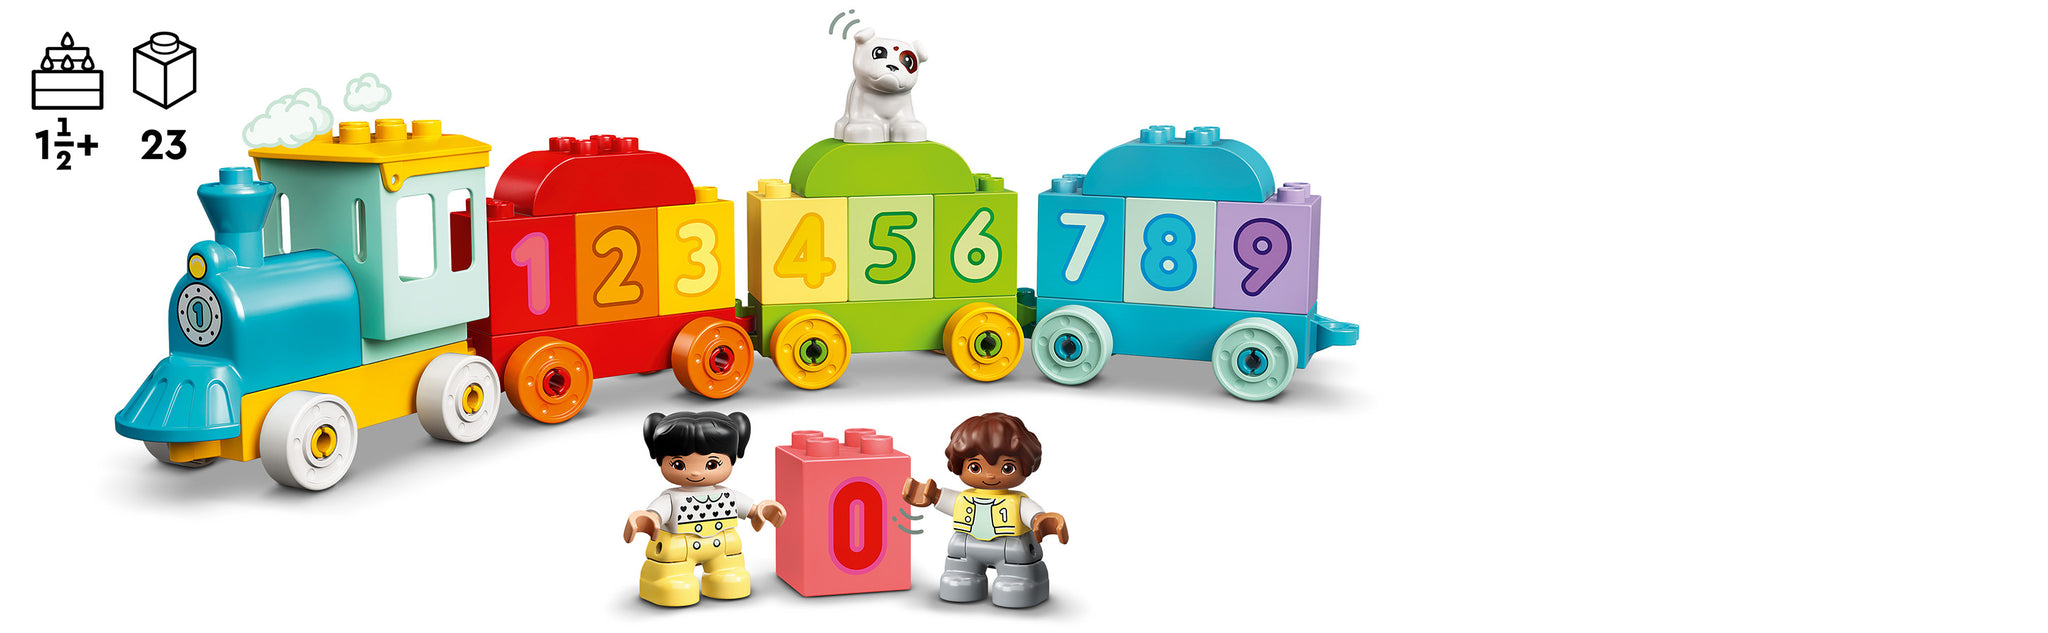 LEGO 10954 Mein erster Zug mit Zahlenzug – Zählen lernen mit DUPLO